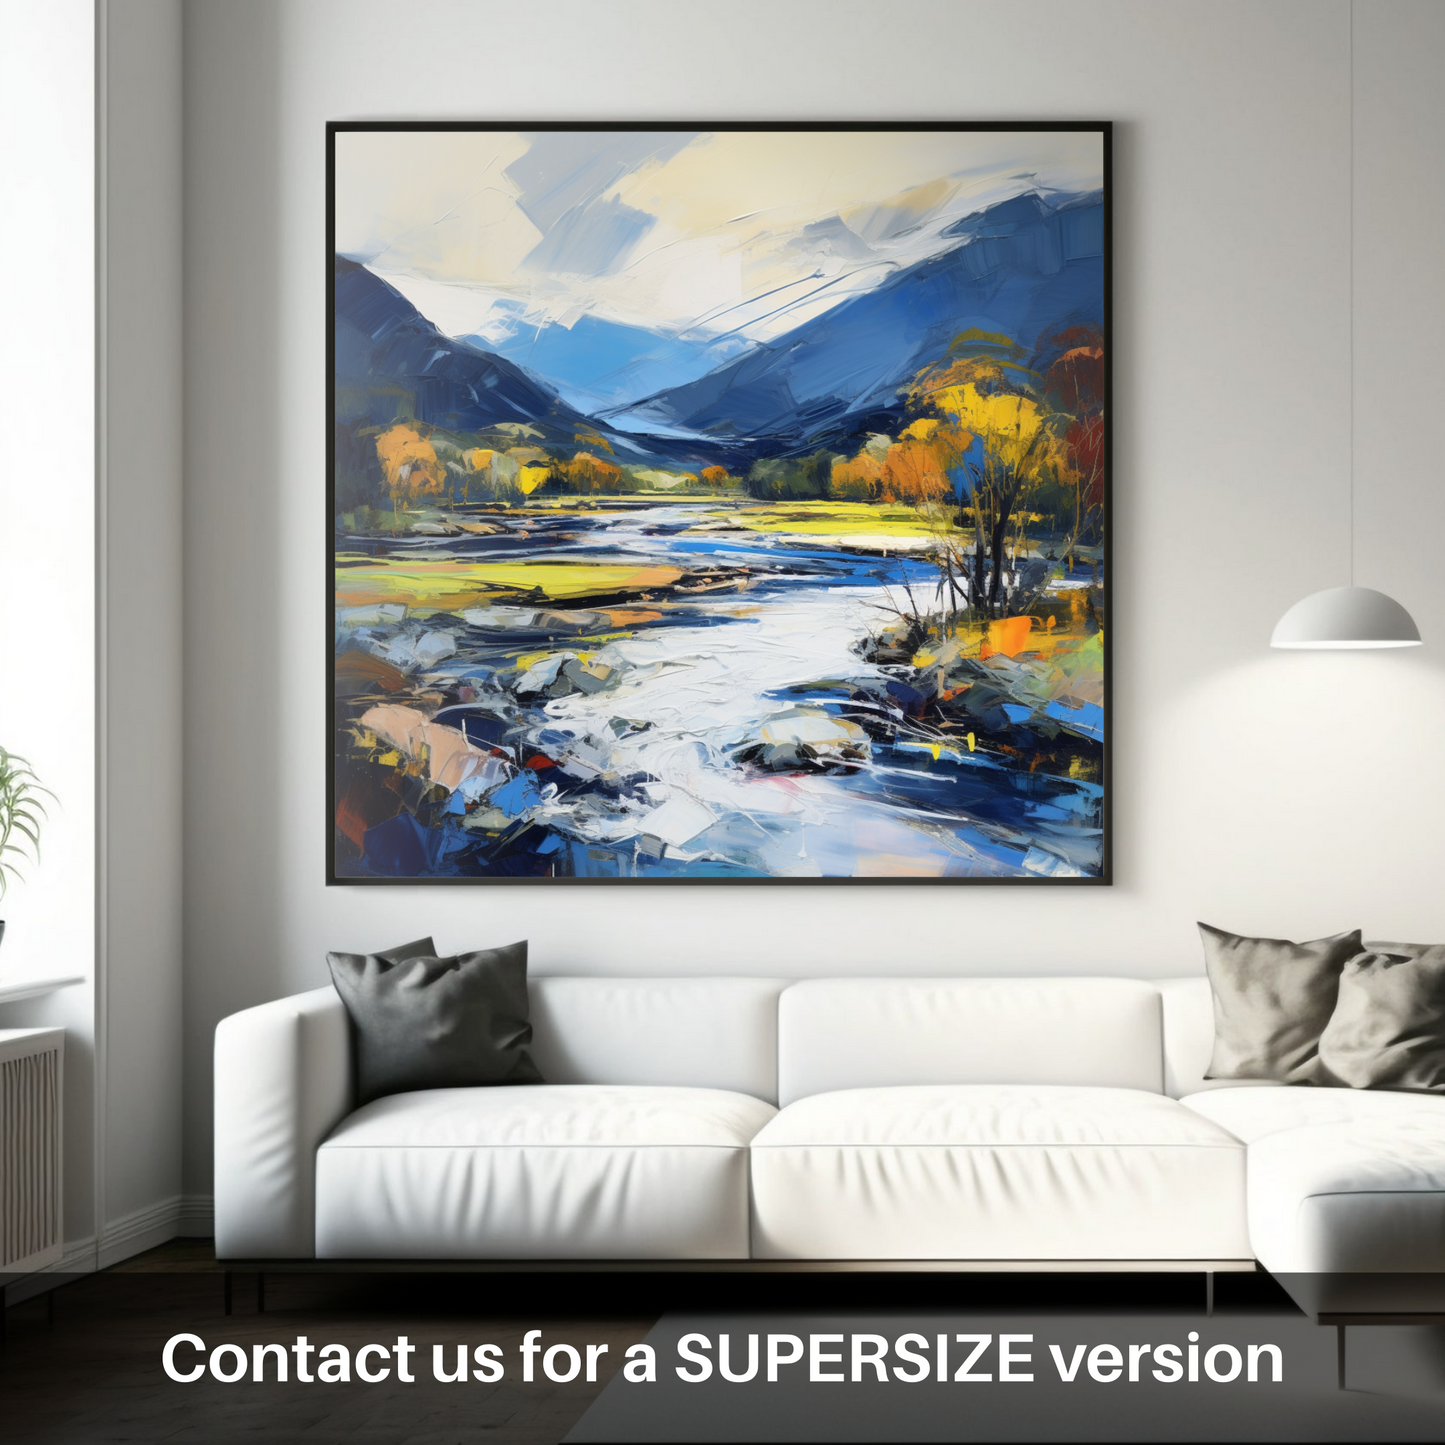 Huge supersize print of River Spey, Highlands